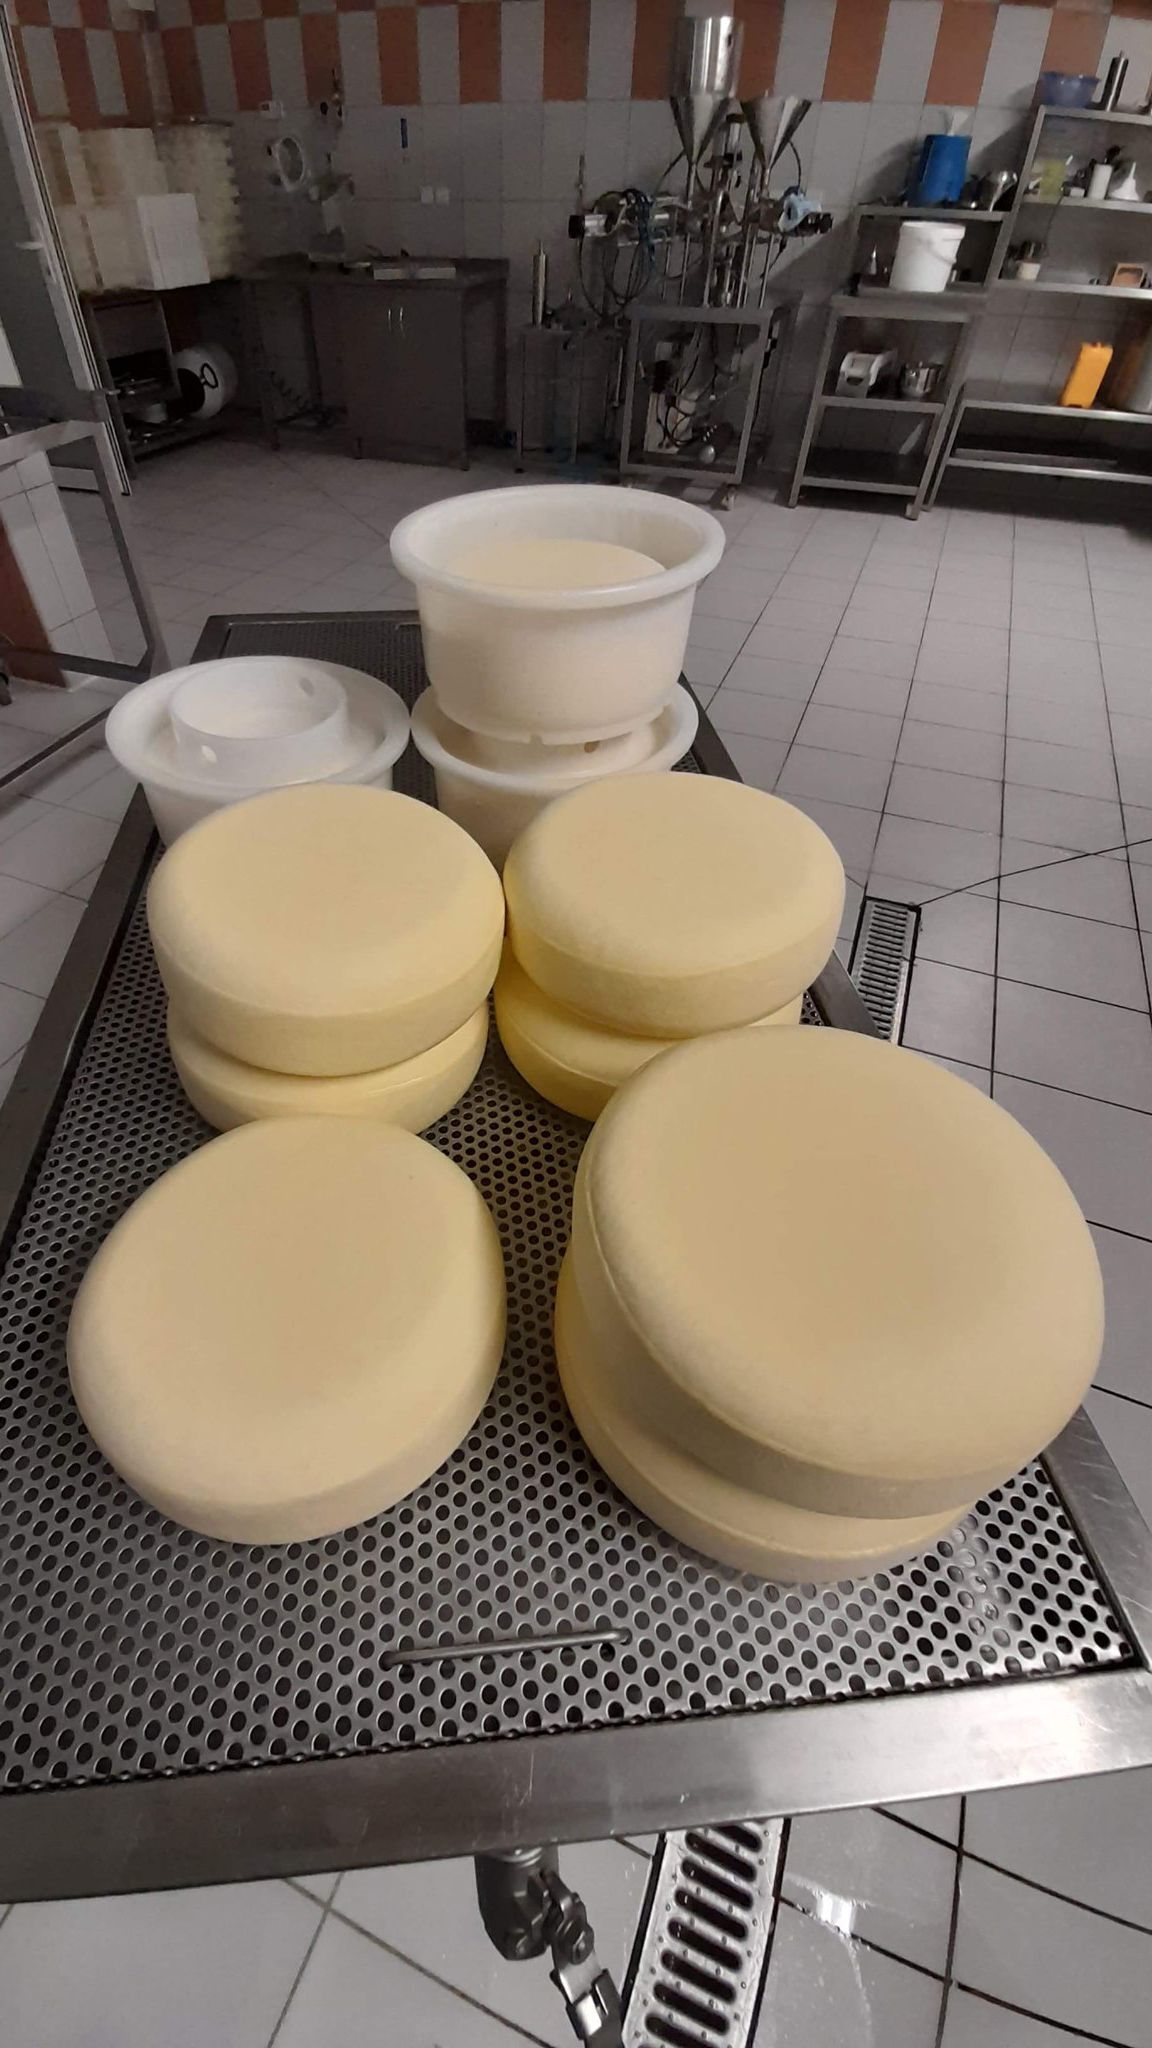 Dozrálý čerstvý sýr ve výrobně